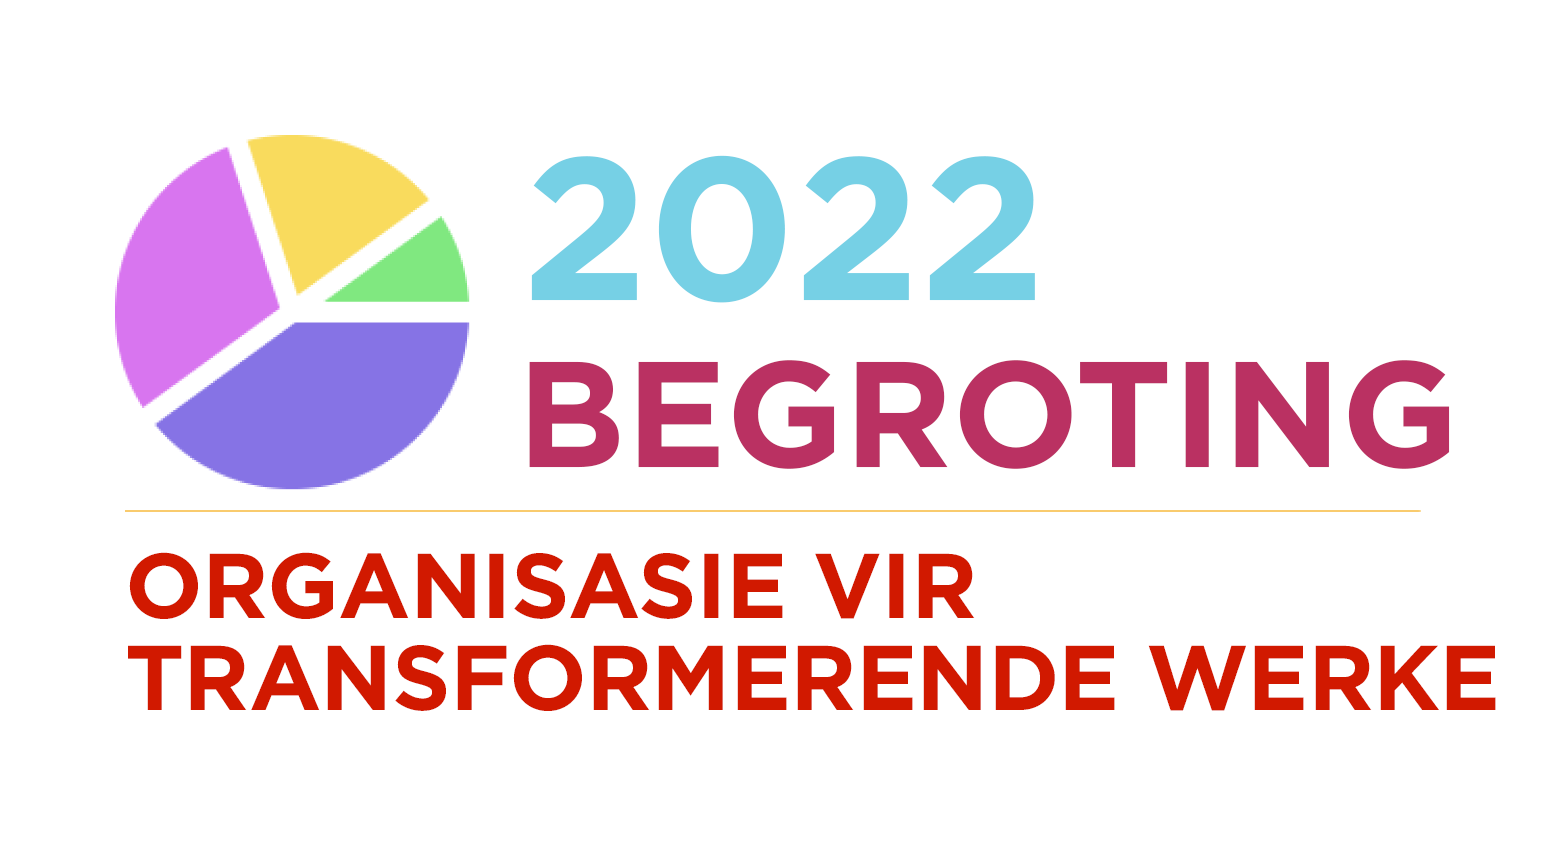 Organisasie vir Transformerende Werke: 2022 Begroting Opdatering